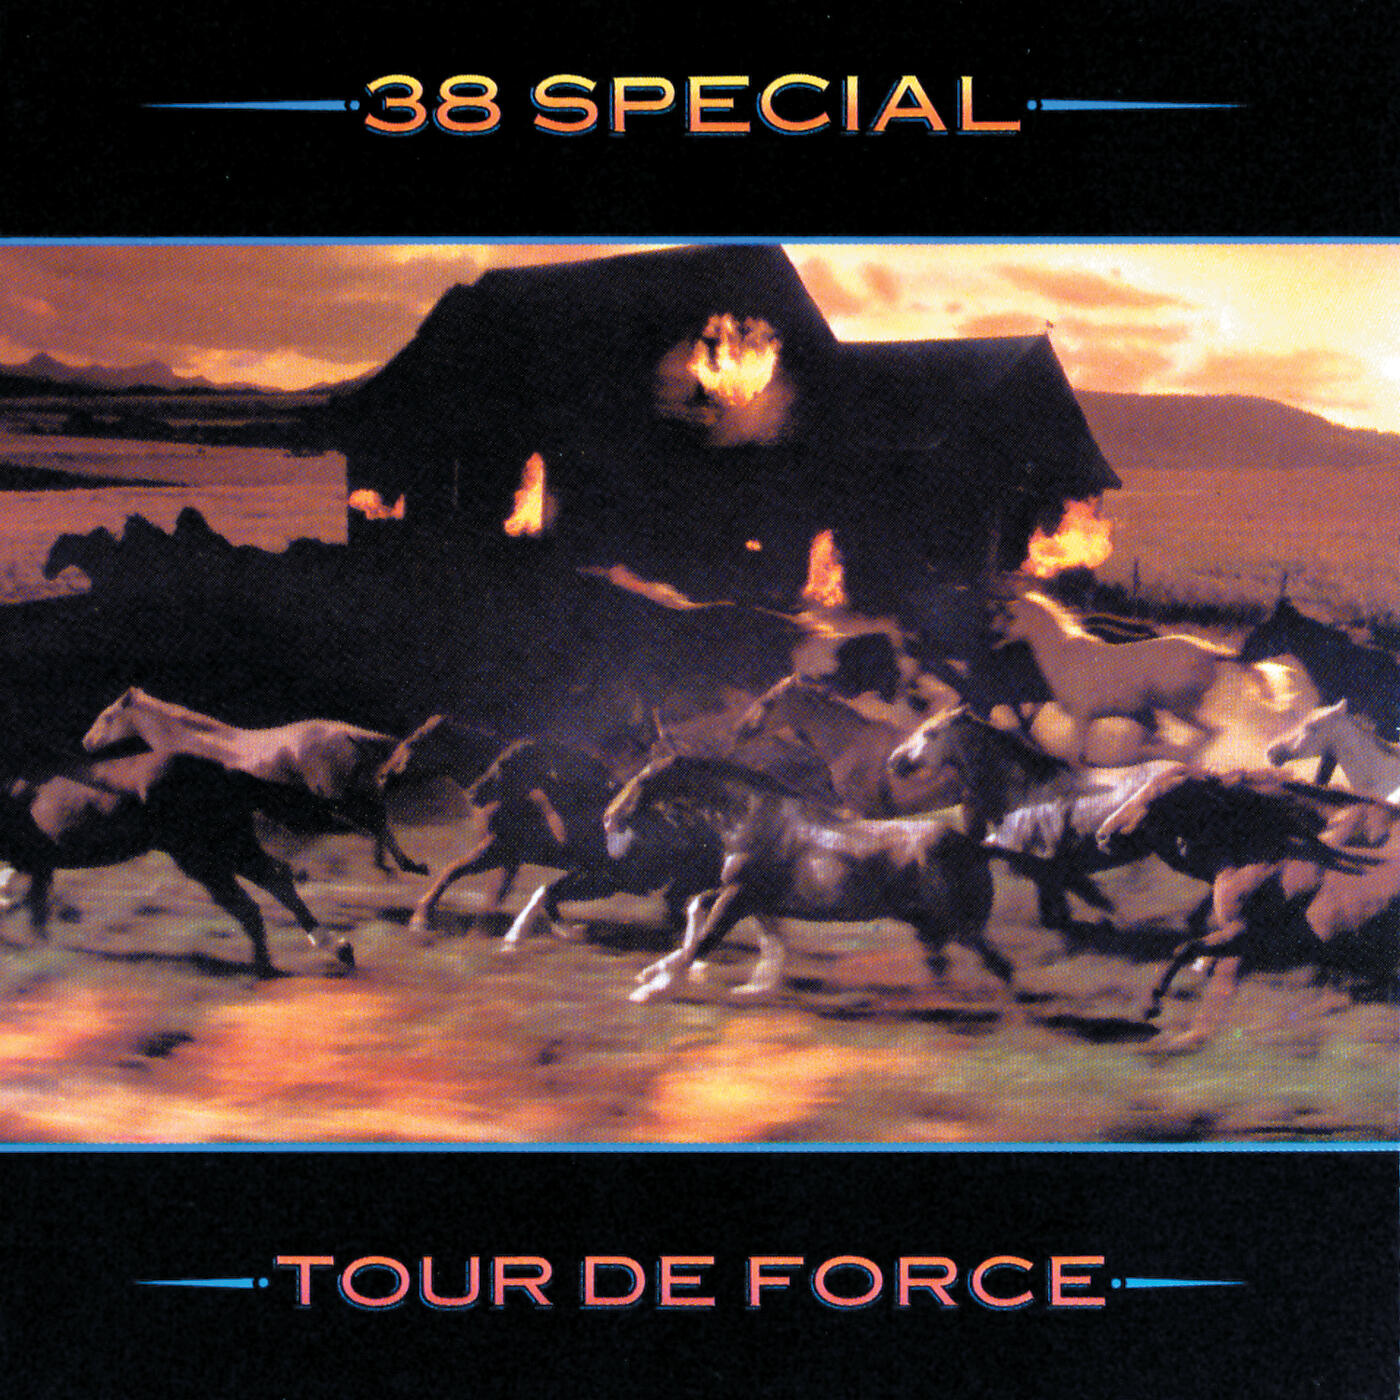 .38 Special Tour De Force iHeart